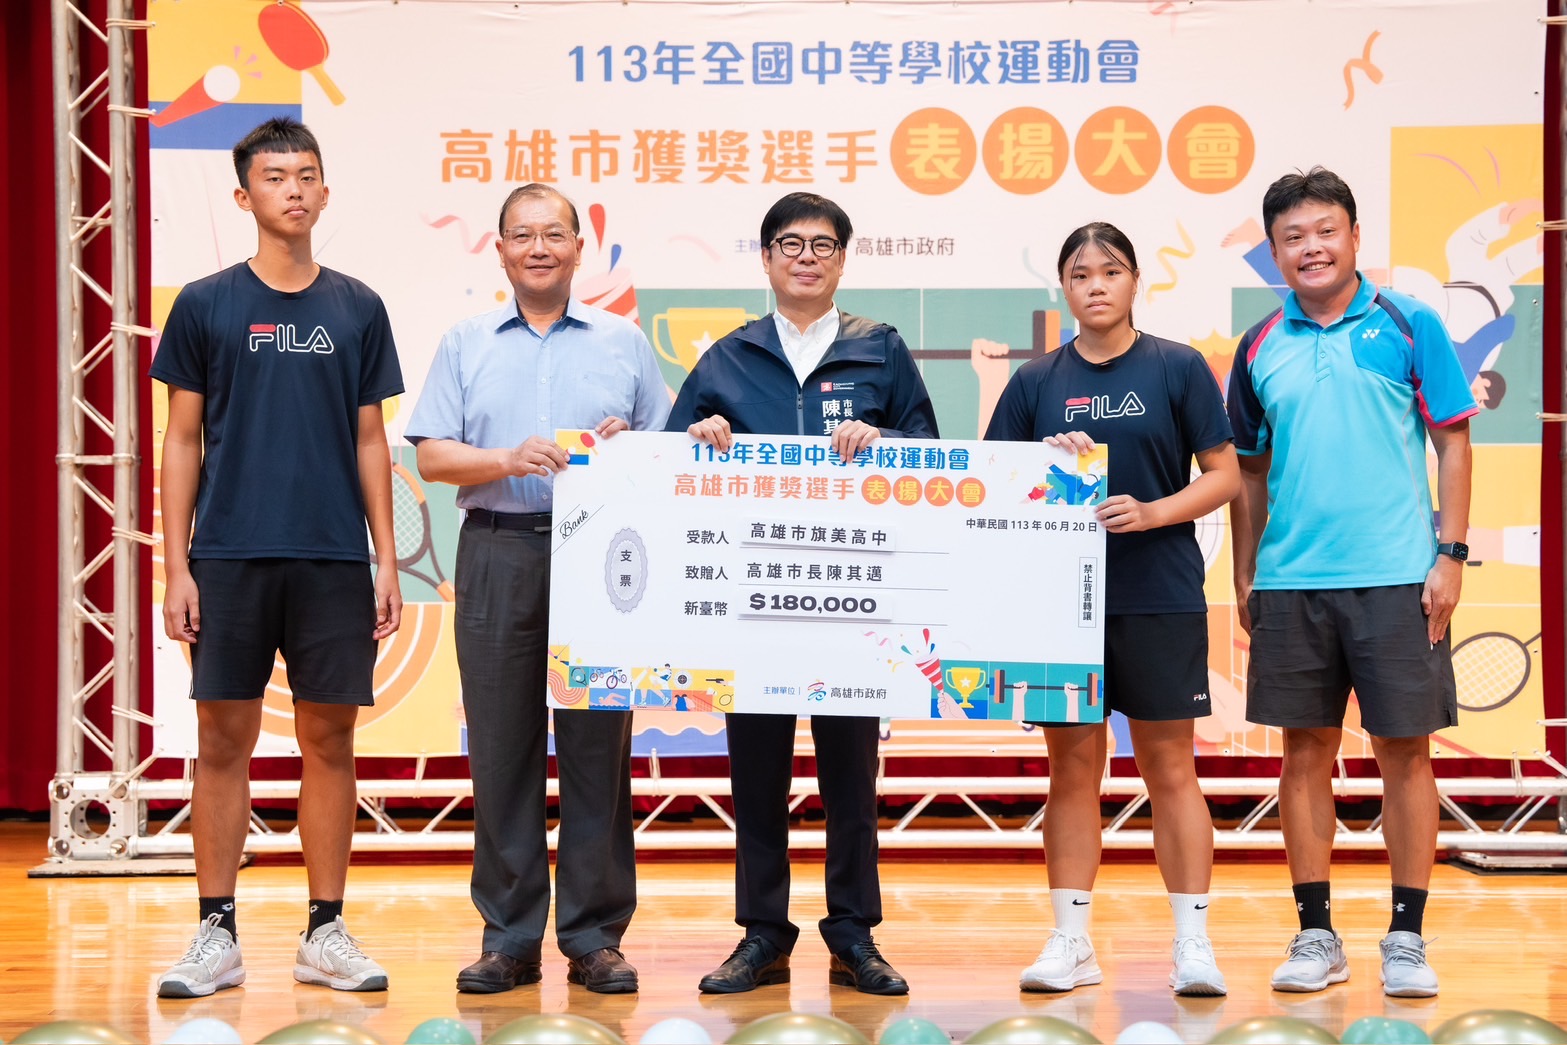 表揚全中運高市獲獎選手 陳其邁宣布明年獎勵金加倍 激勵選手奪牌